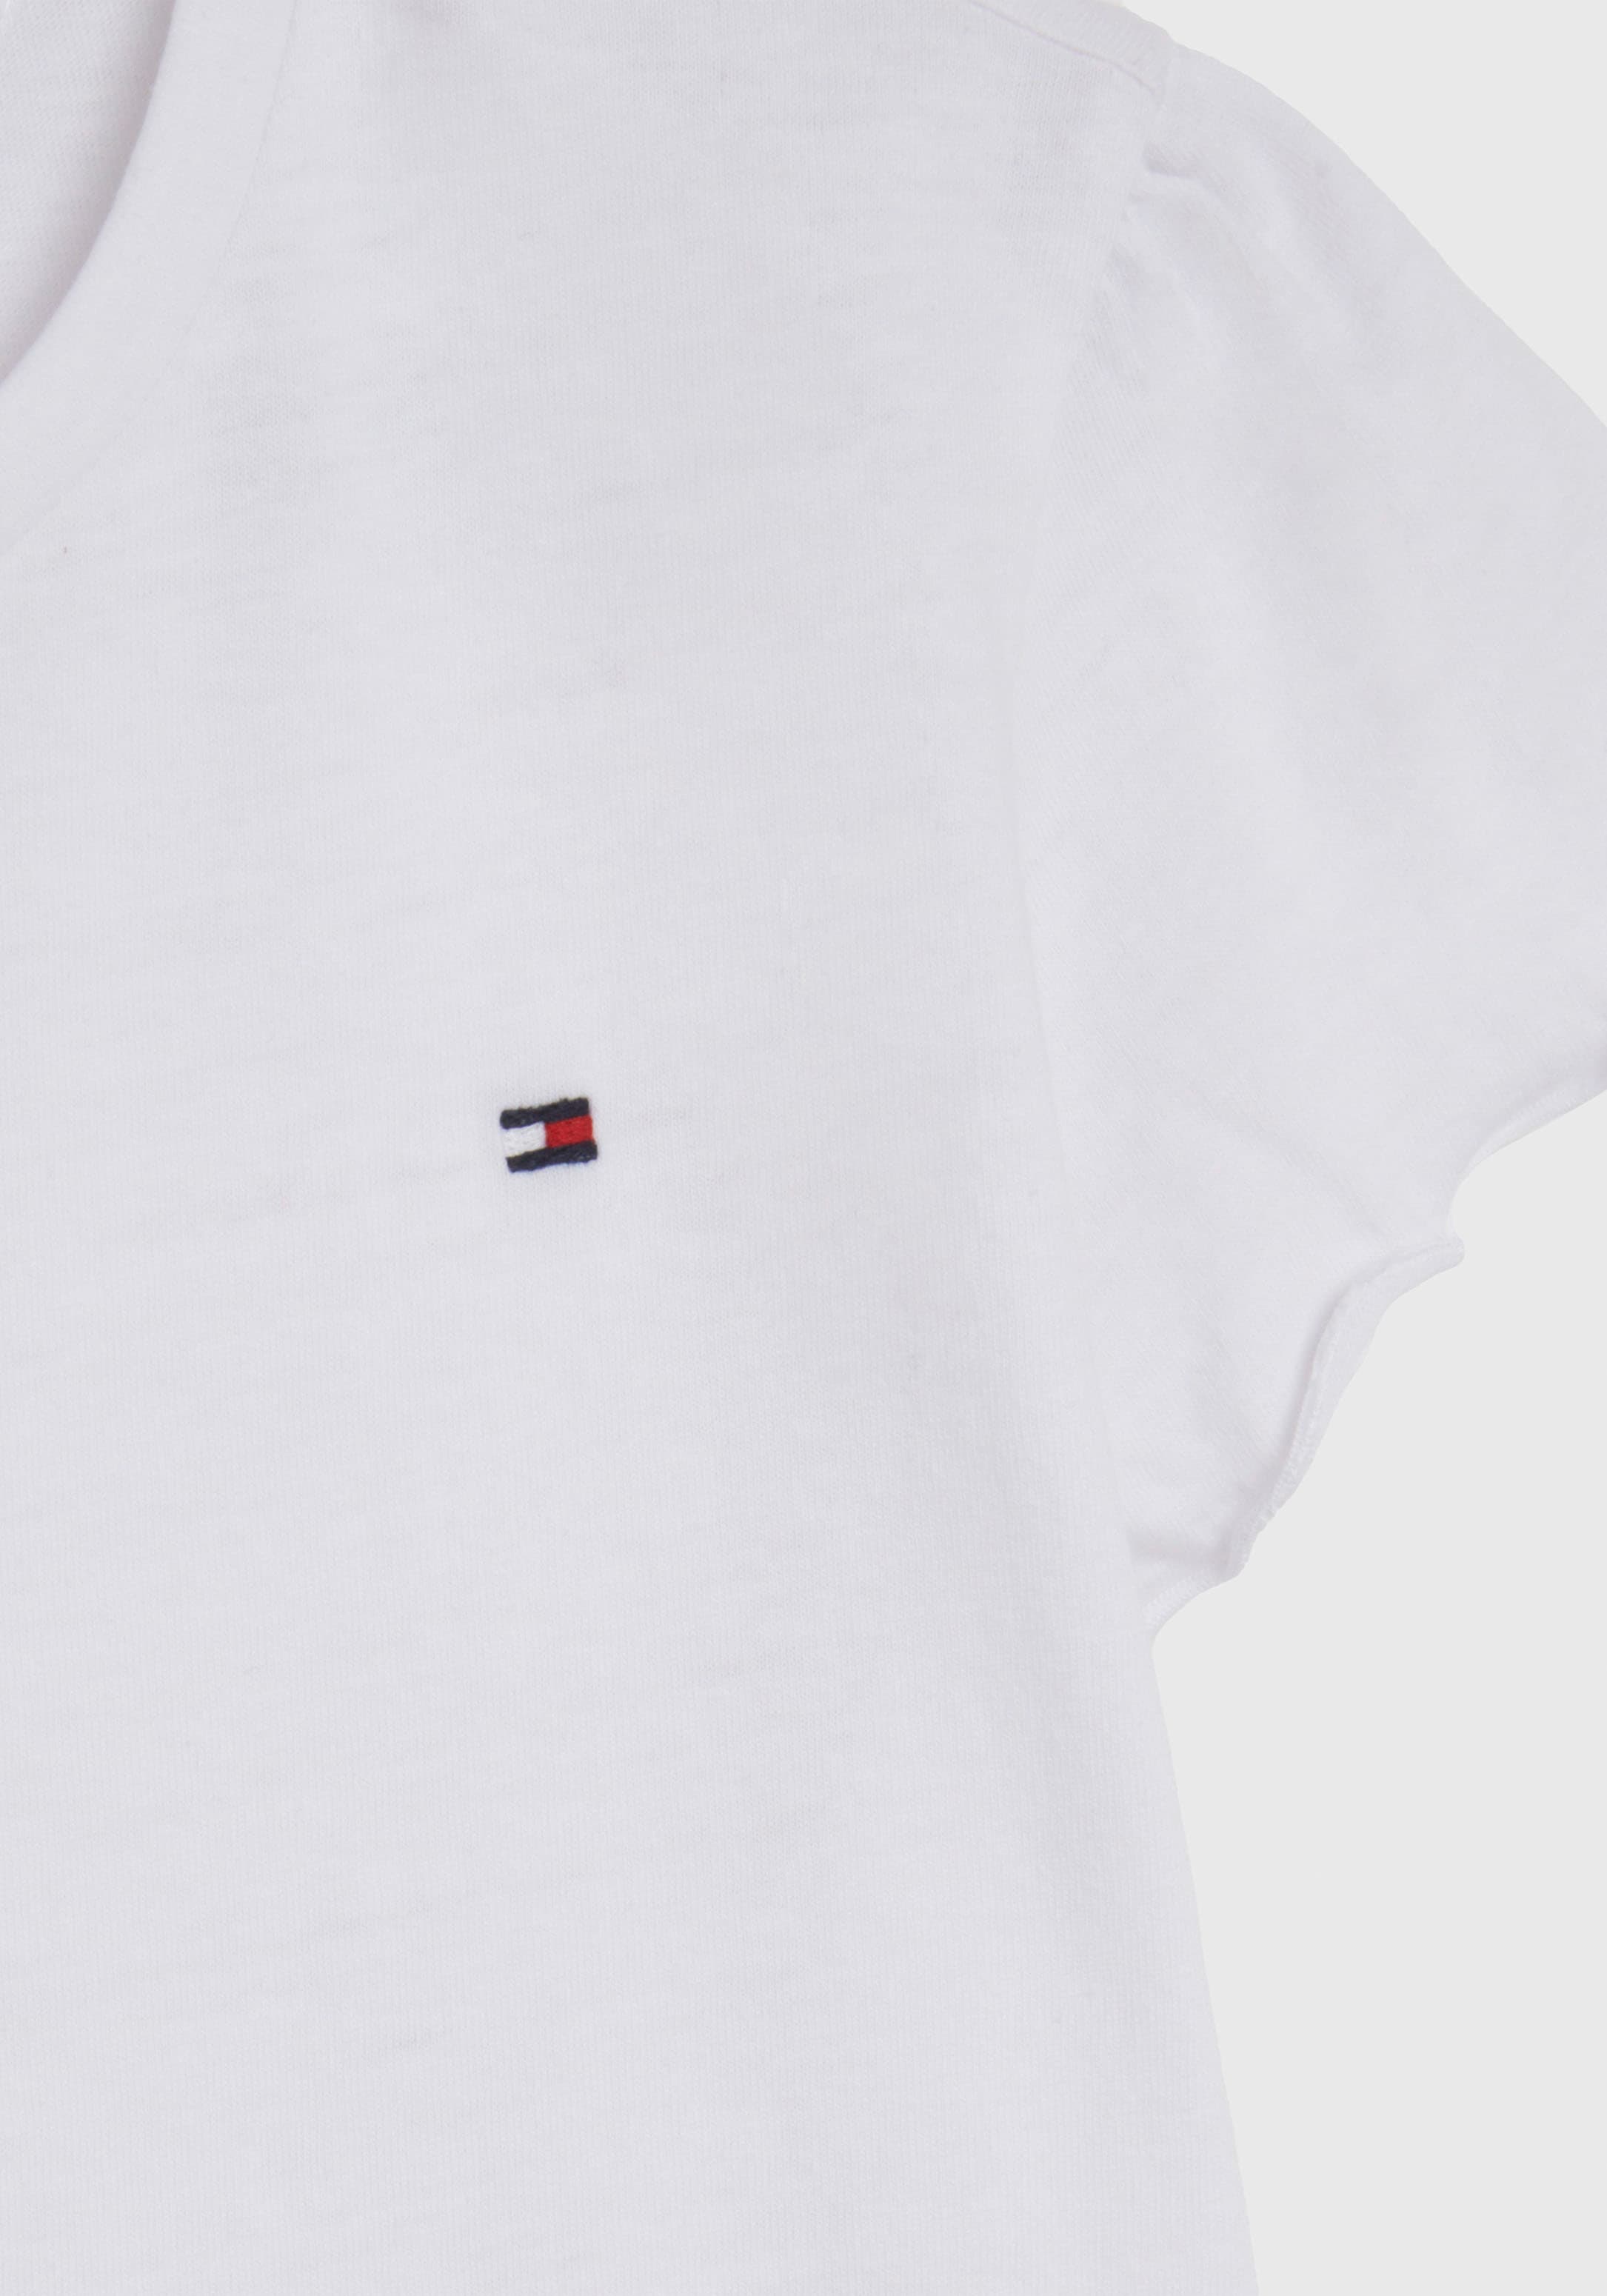 Tommy Hilfiger T-Shirt »ESSENTIAL RUFFLE SLEEVE TOP S/S«, mit kurzen Ärmeln